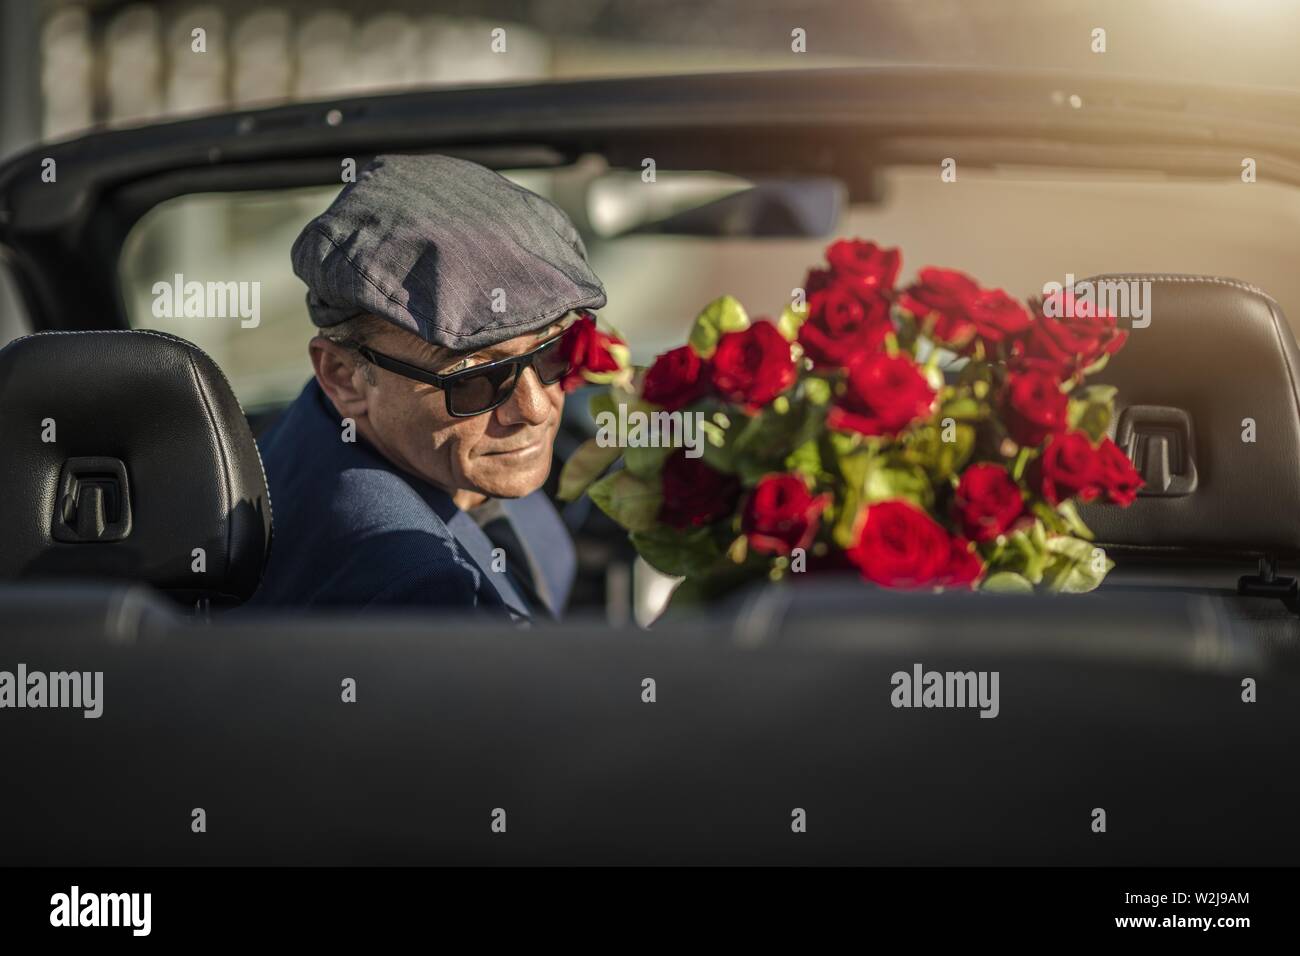 Sugar Daddy Augen Verführung. Attraktive kaukasische Männer mit Rosen  Warten auf seine Freundin in einem Cabrio Stockfotografie - Alamy